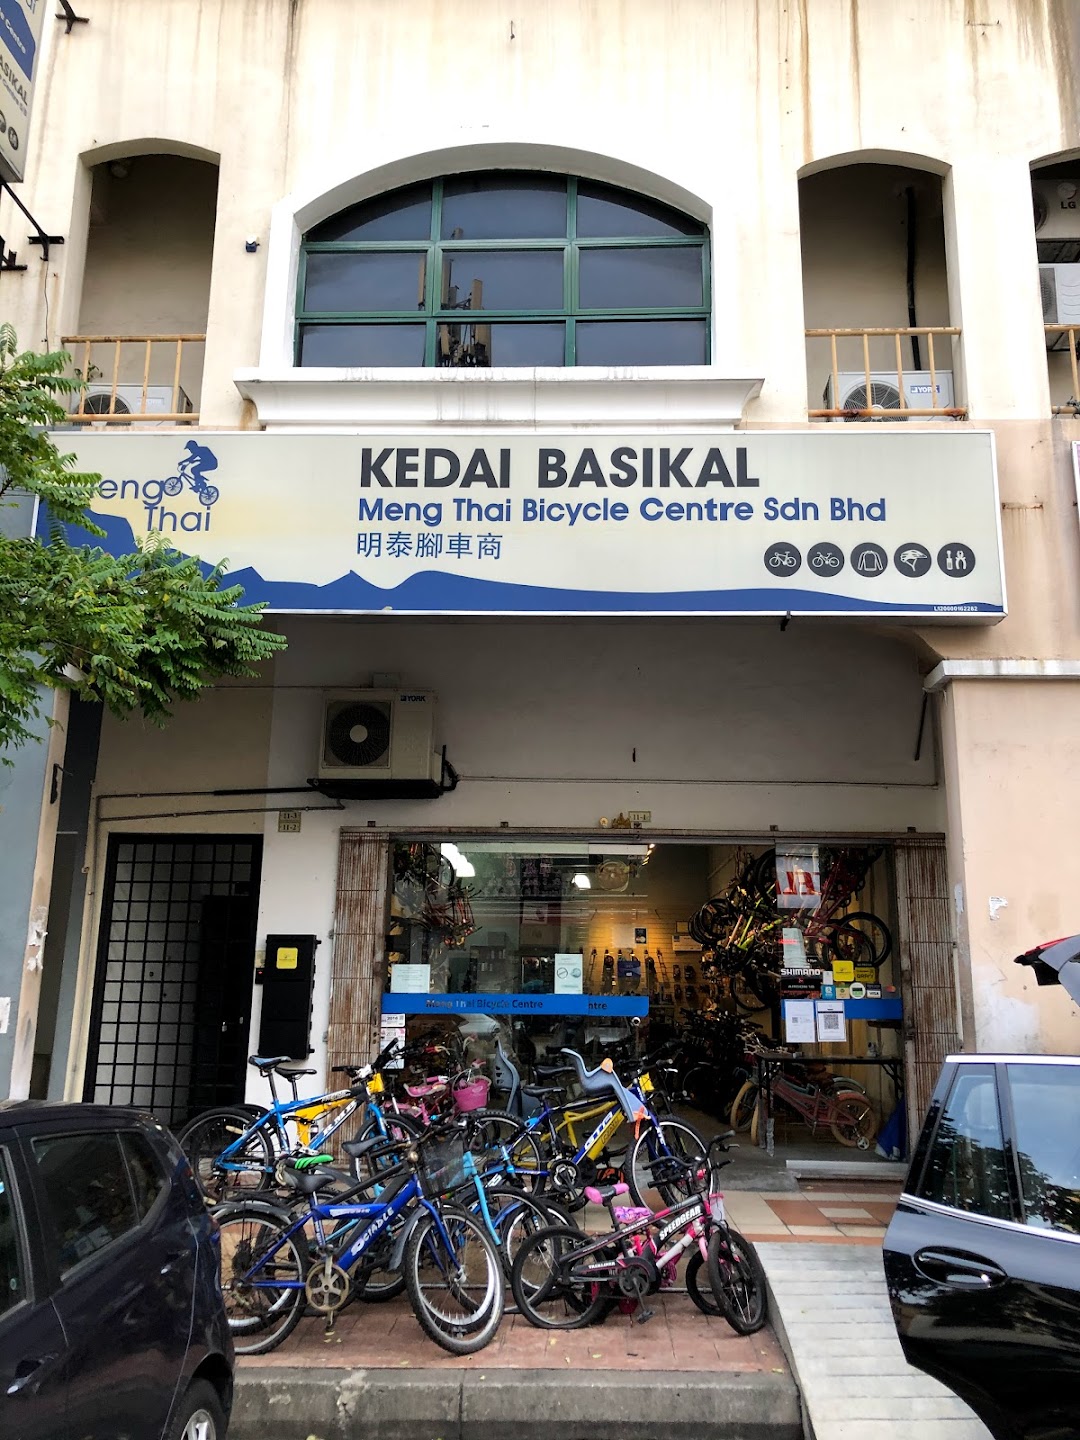 Kedai Basikal Petaling Jaya